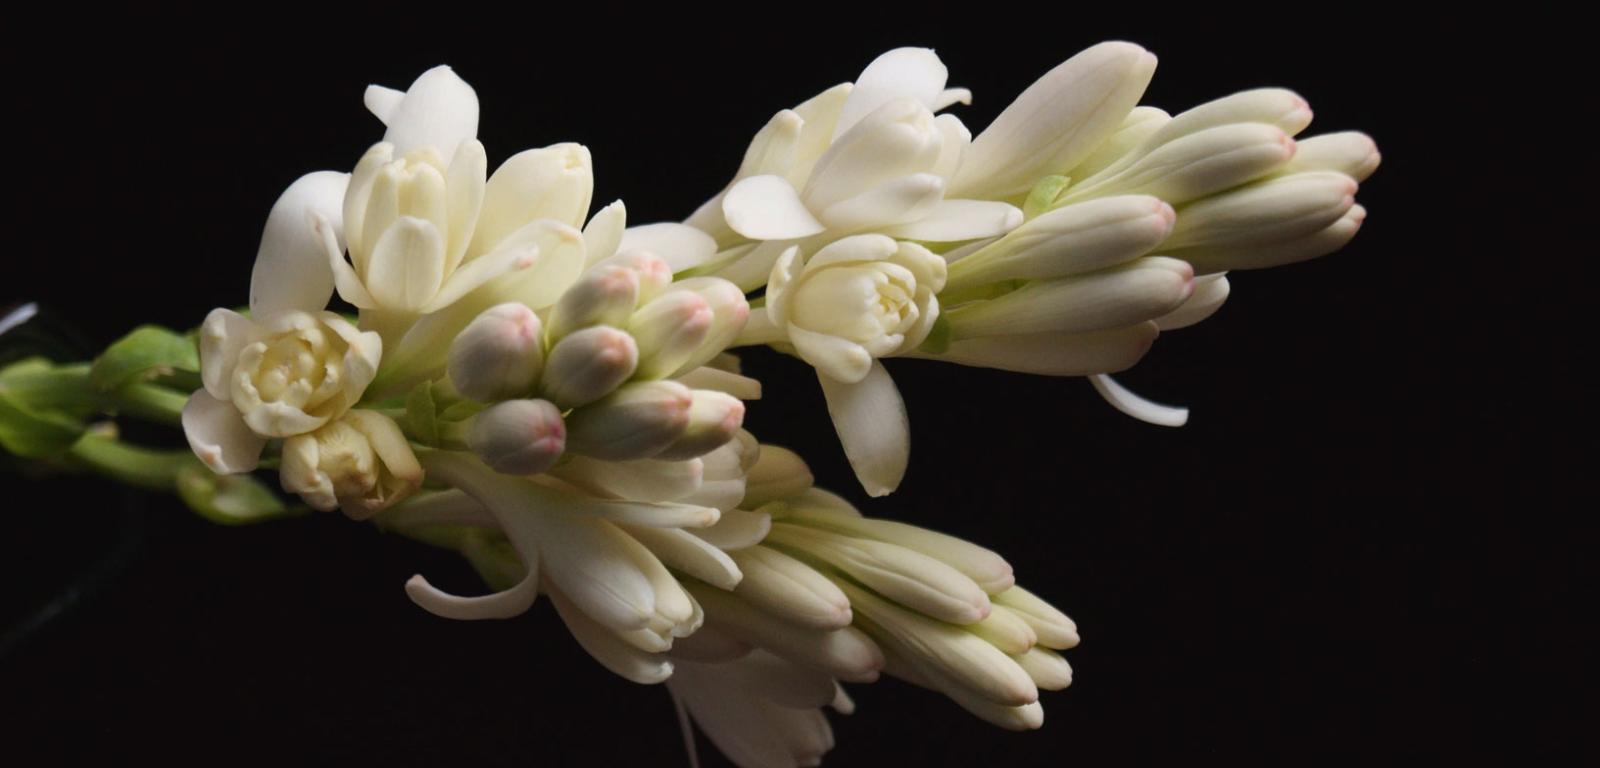 Uważa się, że wydzielany przez kwiaty tuberozy silny zapach zwiększa pożądliwość seksualną.